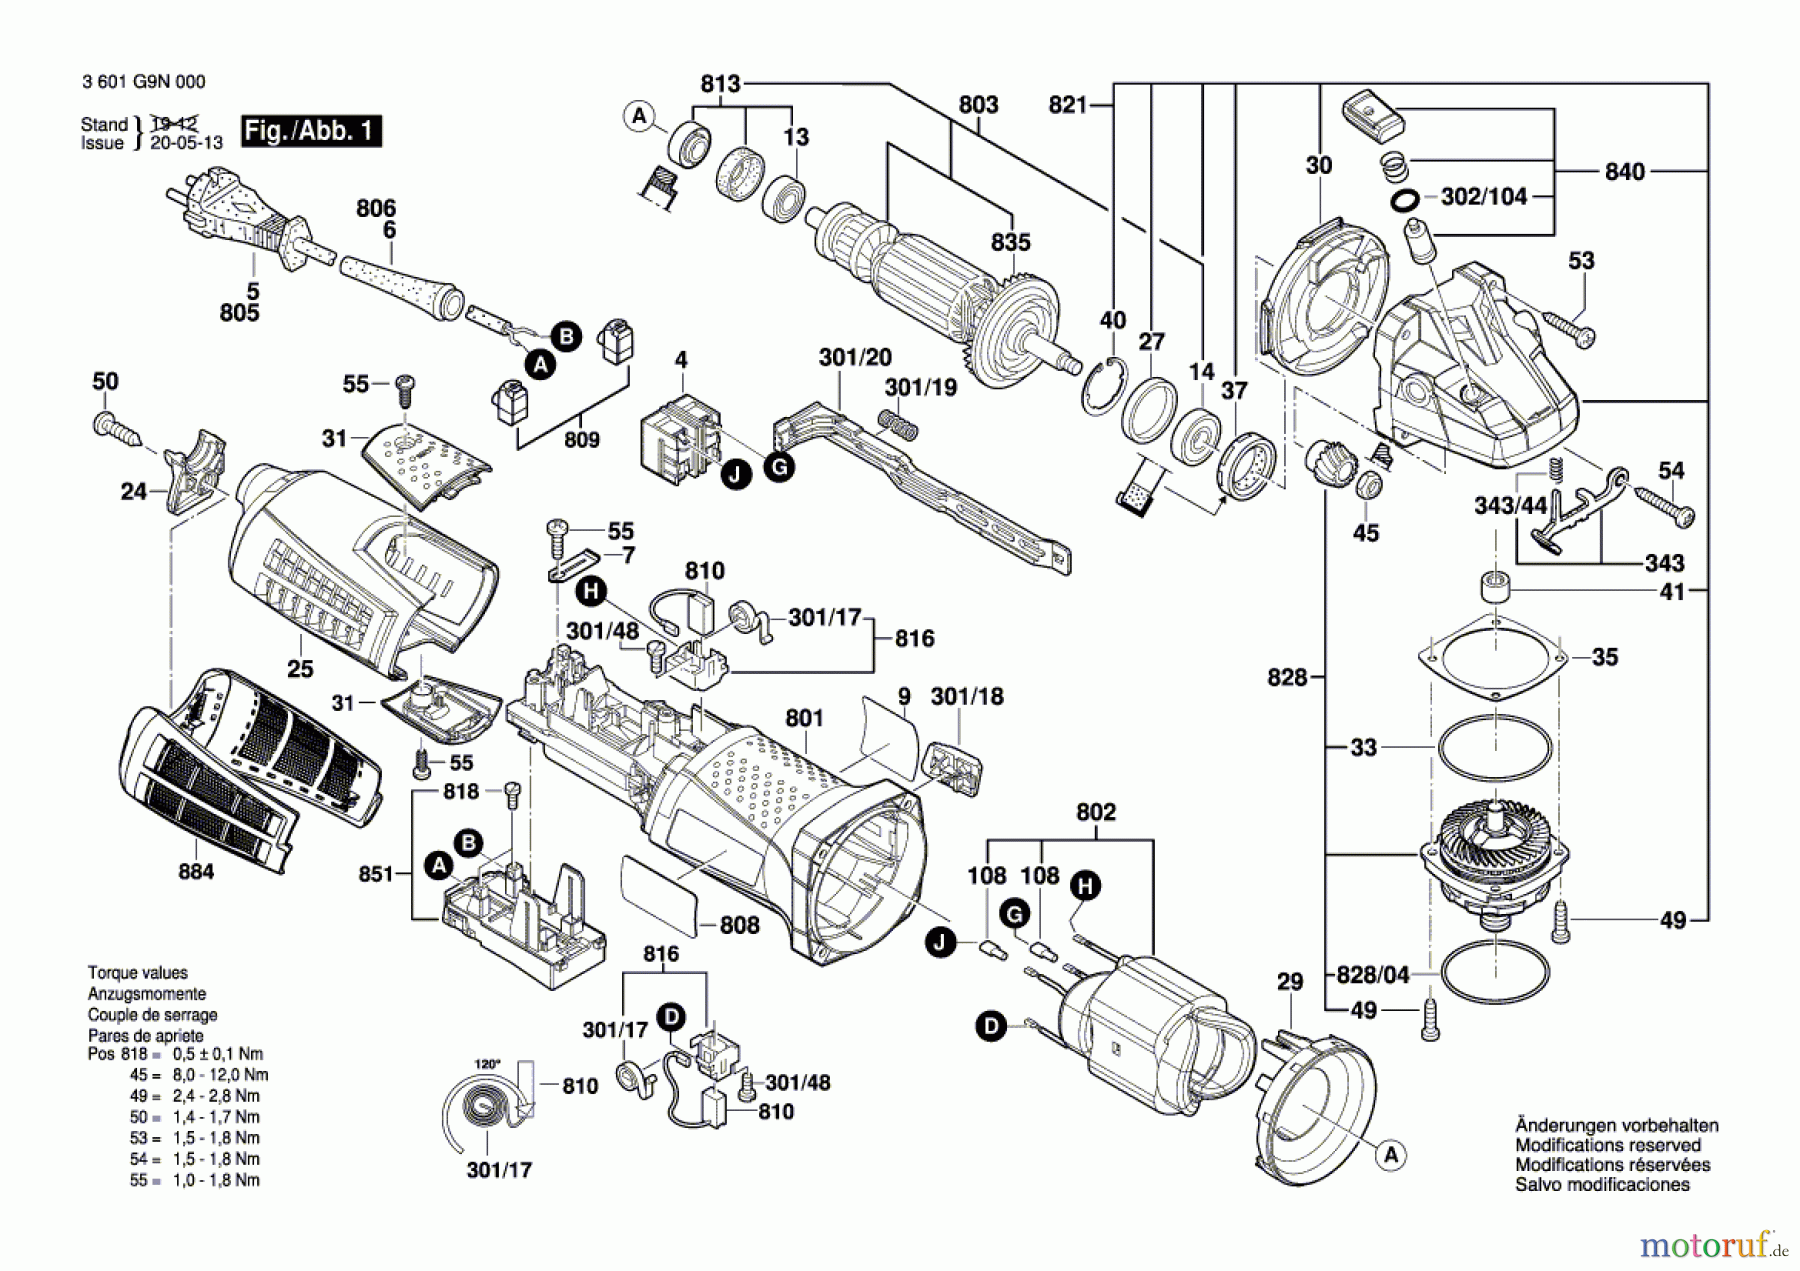  Bosch Werkzeug Winkelschleifer GWS 19-150 CI Seite 1